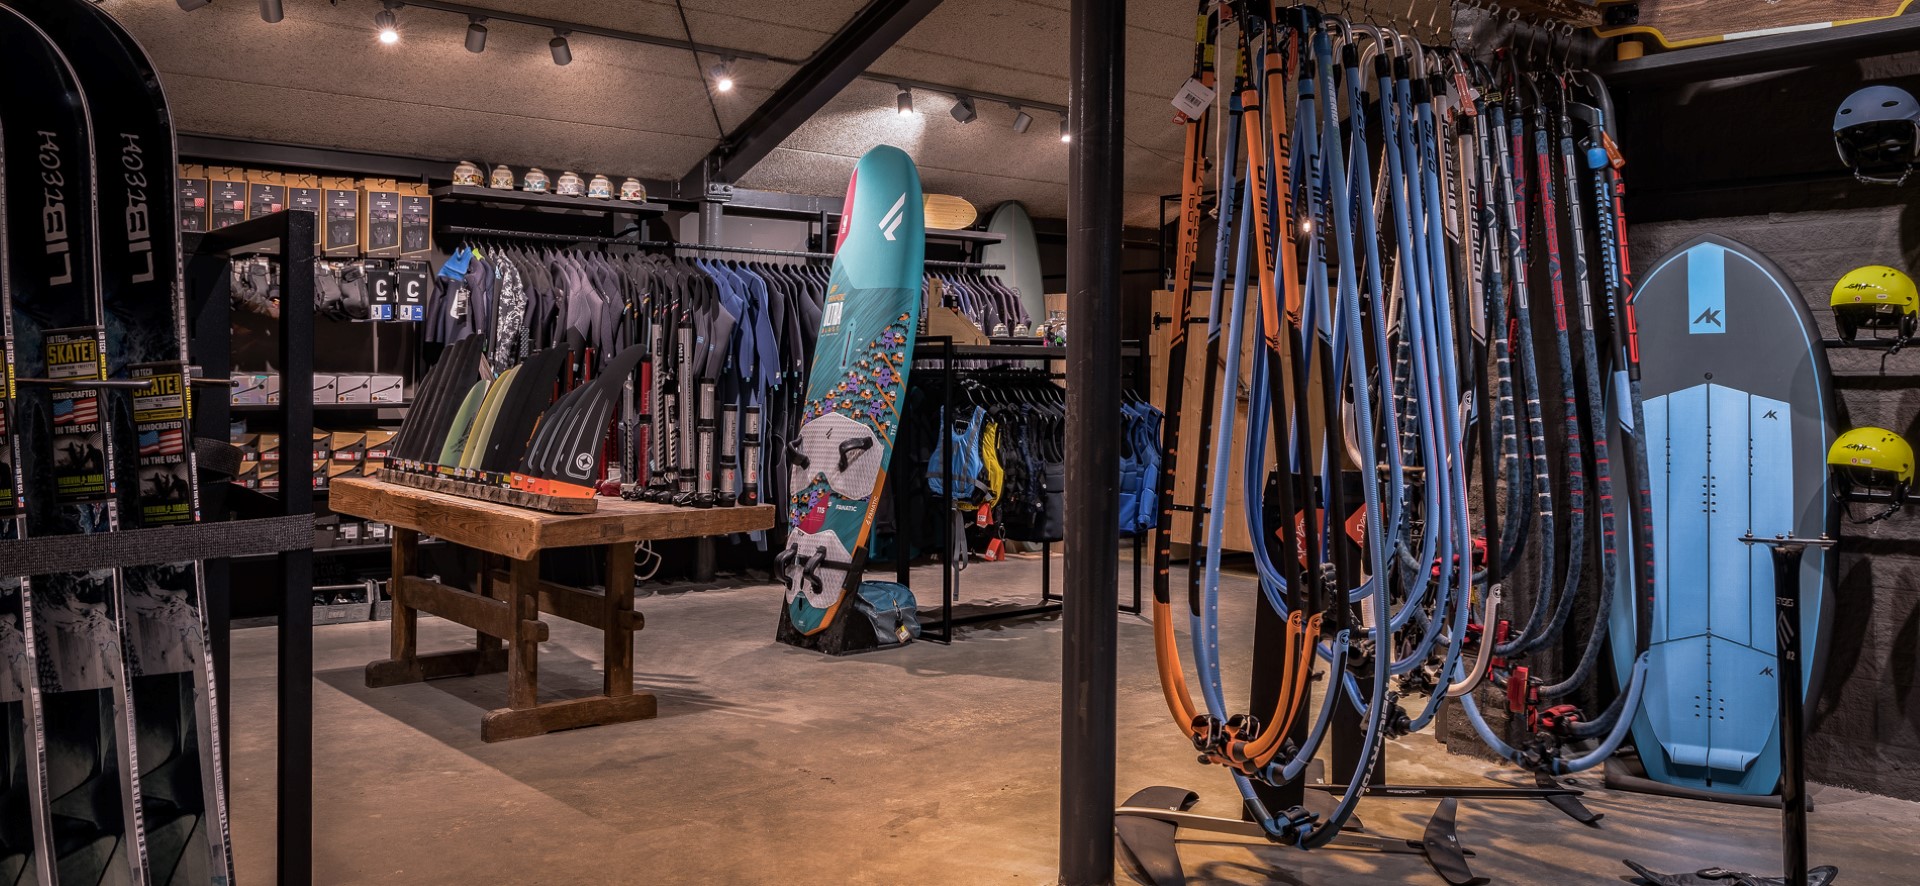 Zeil& Surfcentrum Brouwersdam | Ouddorp (NL) - Sport store